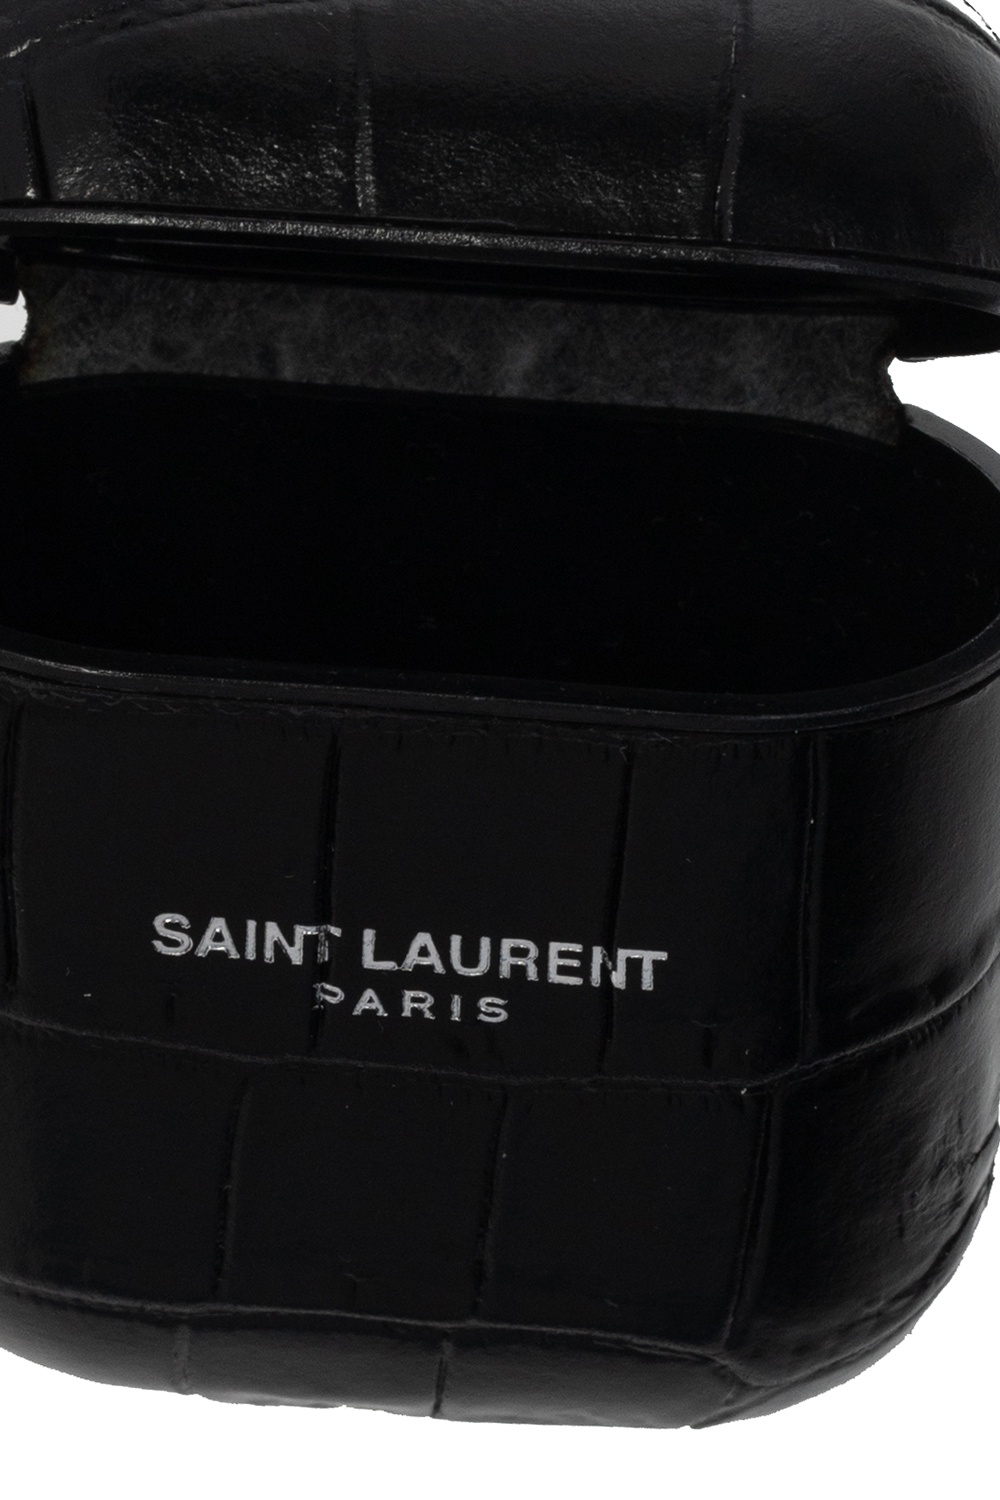 Saint Laurent saint laurent zebra jacquard cardigan item